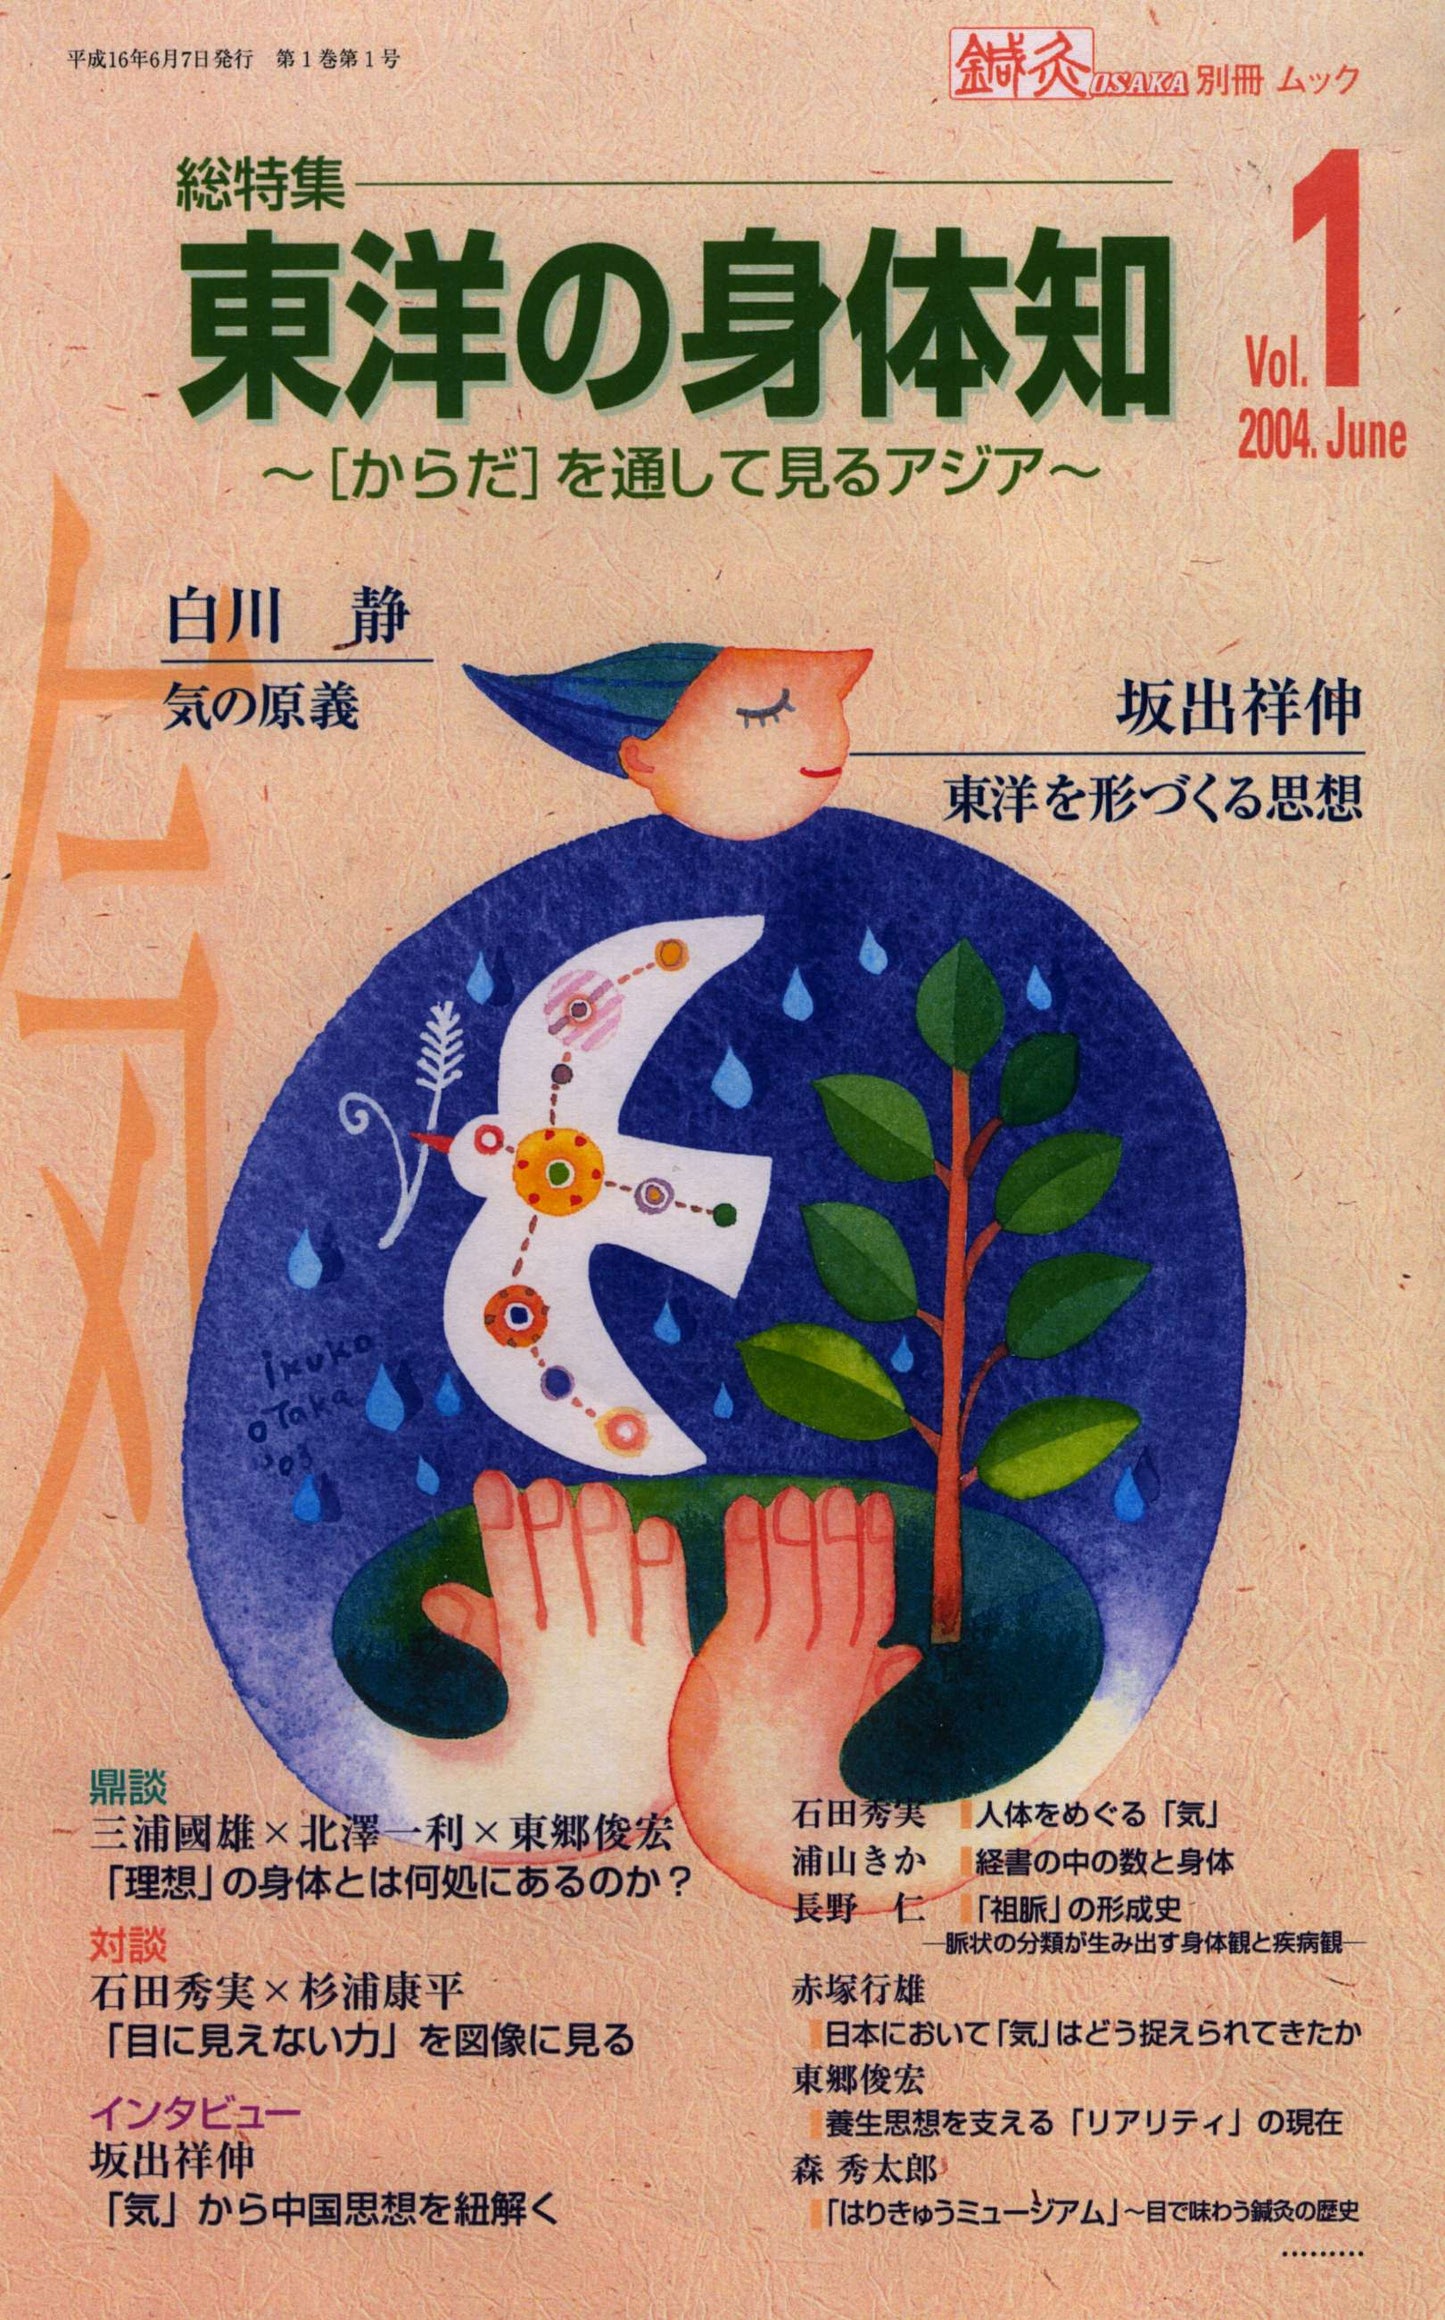 鍼灸OSAKA別冊ムックVol.1総特集東洋の身体知-からだを通して見るアジア-【特価】